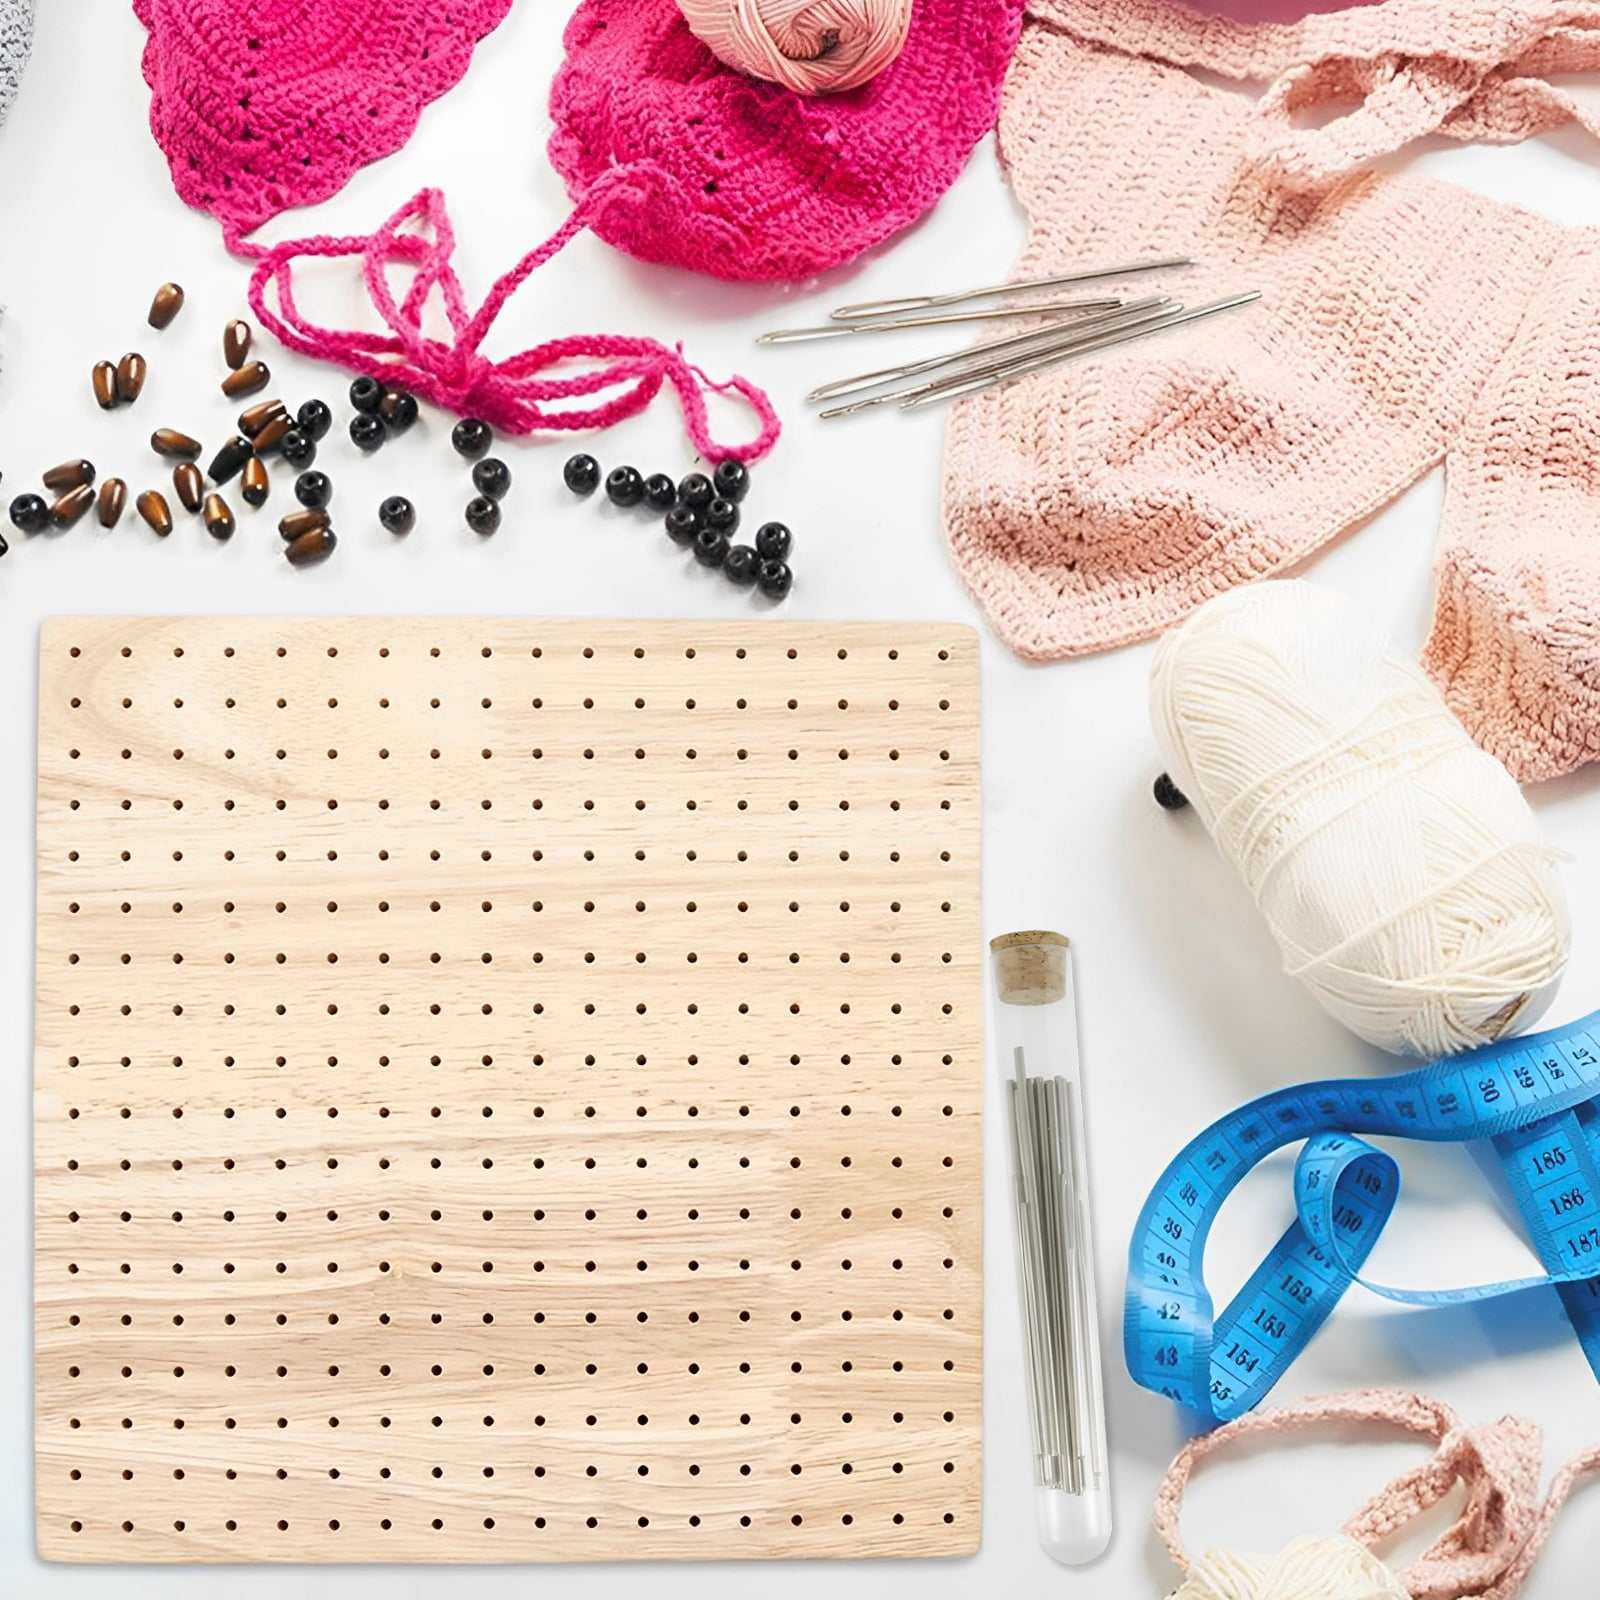 Wooden Crochet Blocking Board, Crochet Tools, Knitting Mats, Crochet Kit